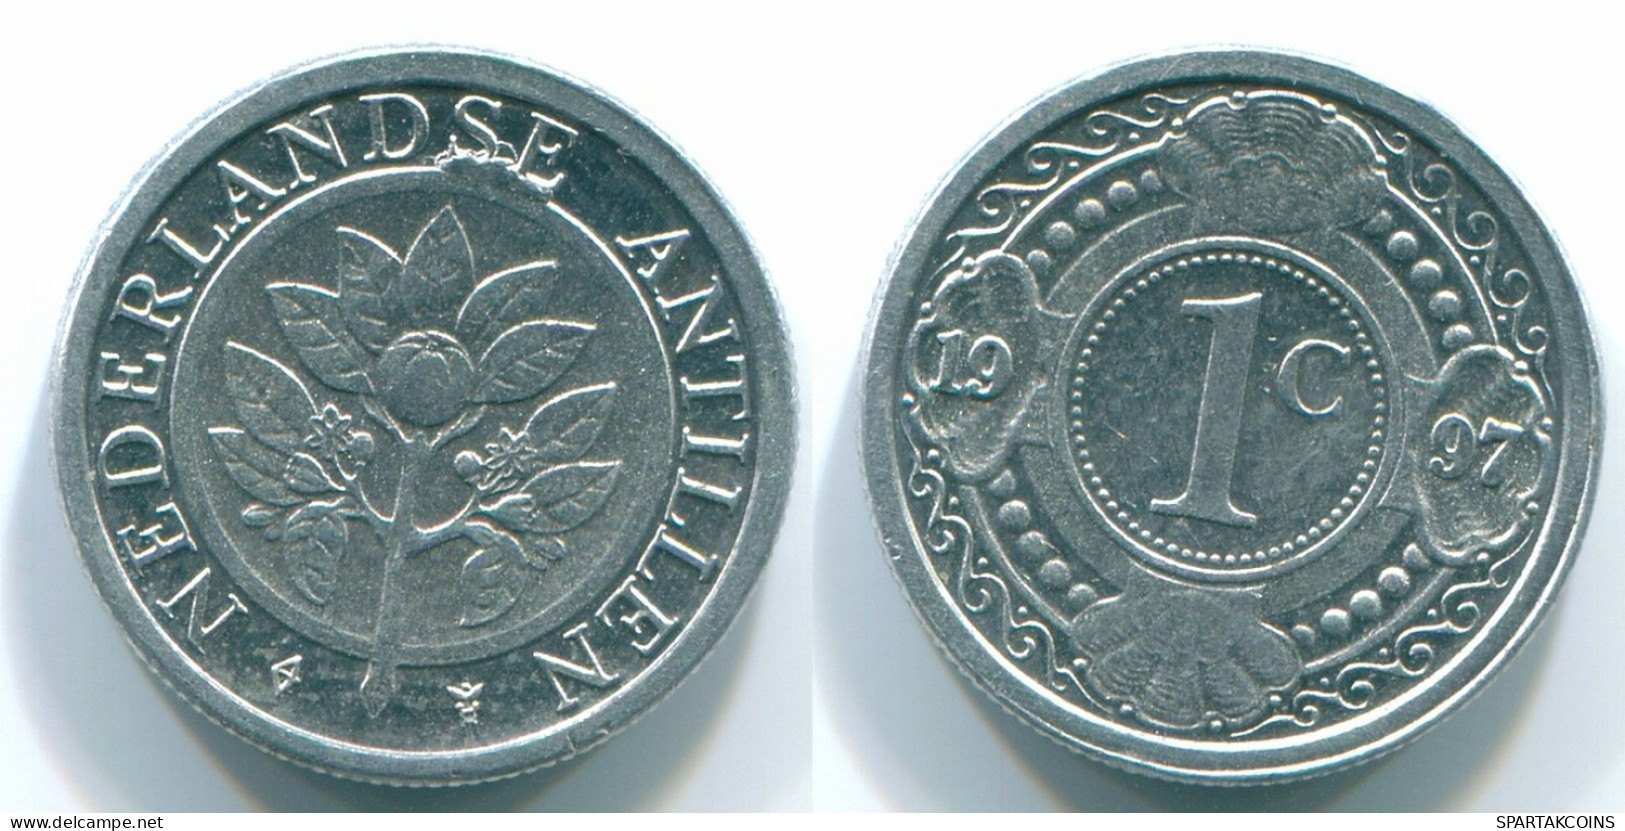 1 CENT 1996 NETHERLANDS ANTILLES Aluminium Colonial Coin #S13151.U.A - Netherlands Antilles